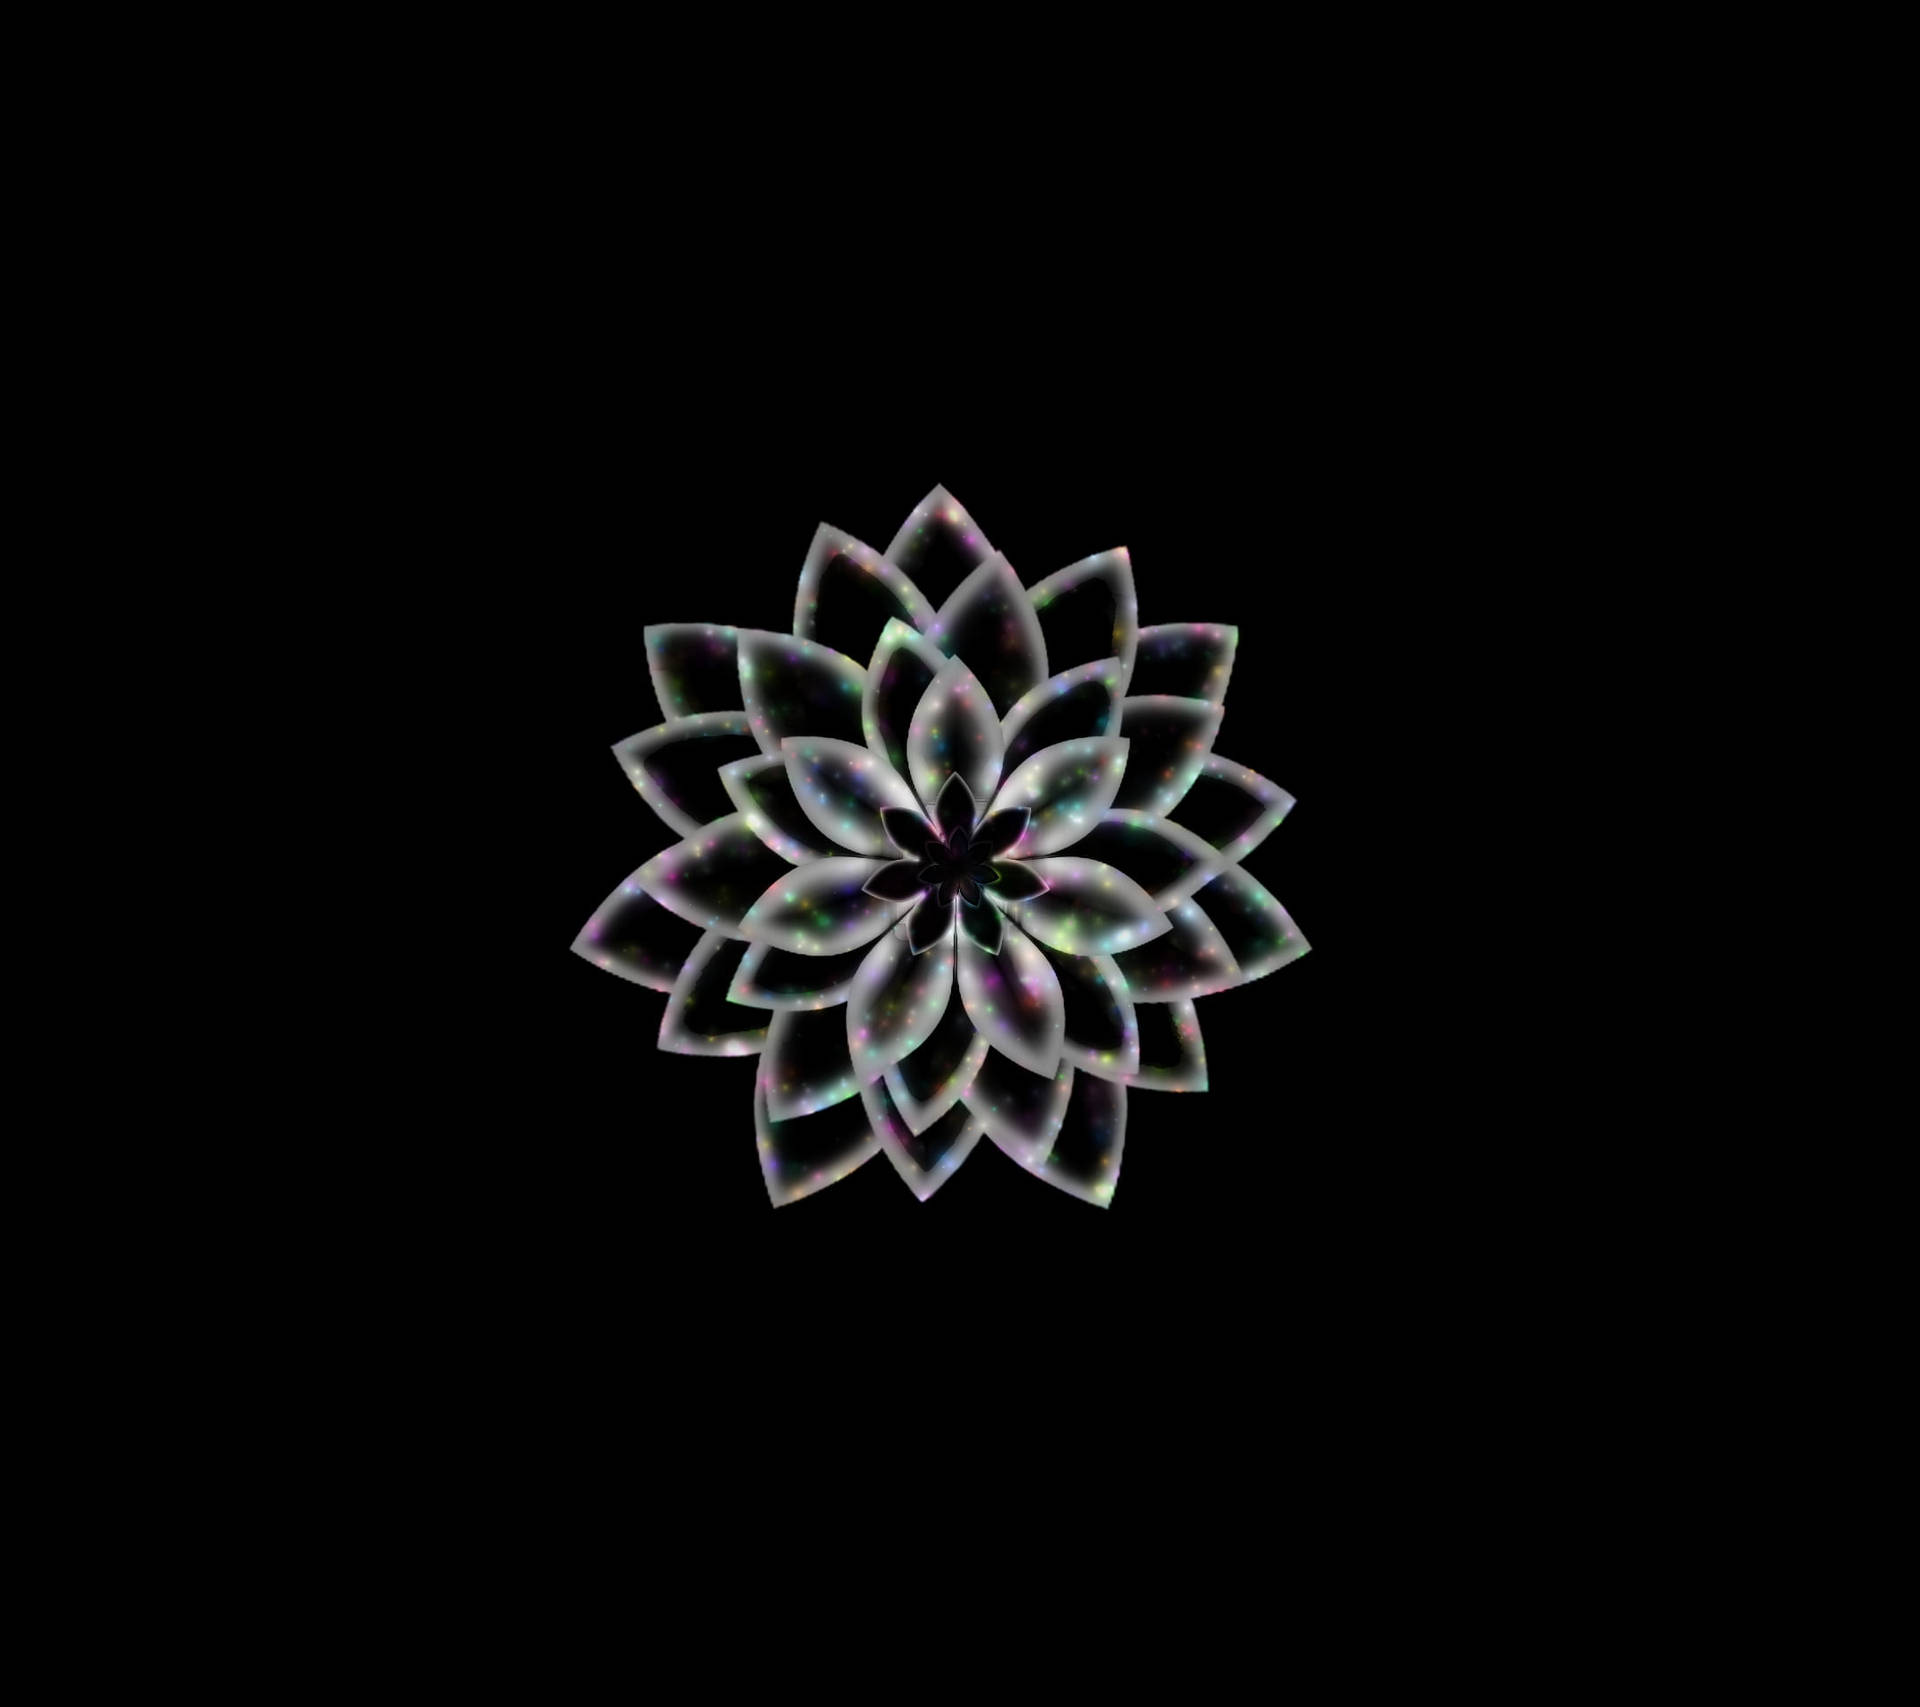 Schwarzeund Weiße Blumen-abstraktion Wallpaper